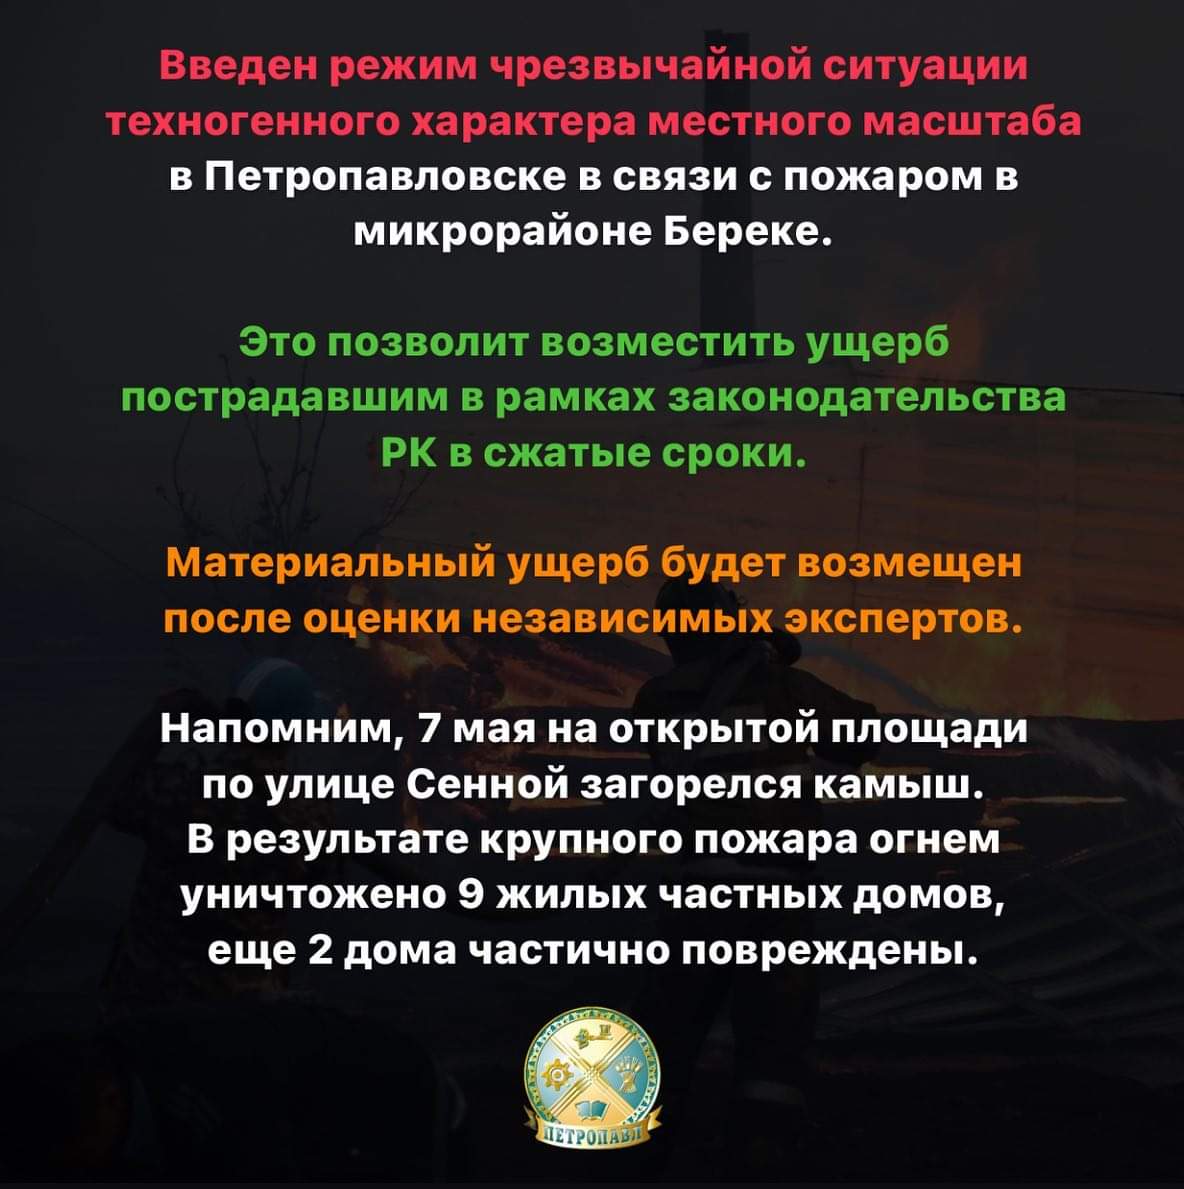 11 мая в Петропавловске объявили режим чрезвычайной ситуации техногенного характера местного масштаба. Постановление размещено на портале «Открытые НПА»